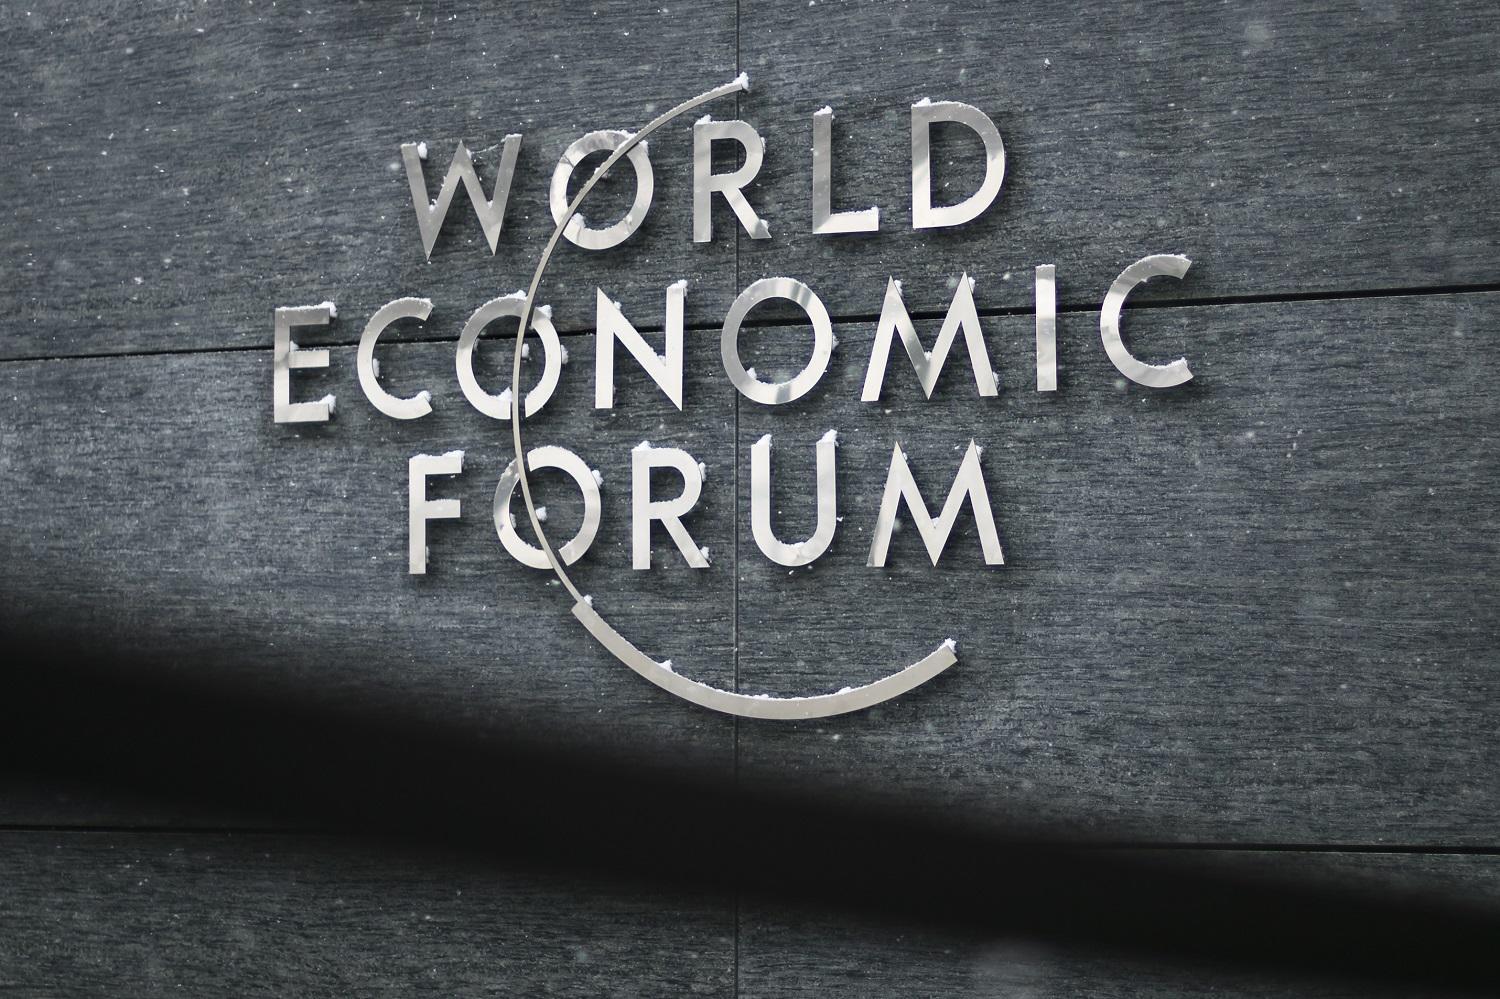 شعار المنتدى الاقتصادي العالمي، والذي ستقام نسخة الشرق الأوسط وشمال إفريقيا منه في البحر الميت في 6 و 7 أبريل الحالي. أ ف ب 